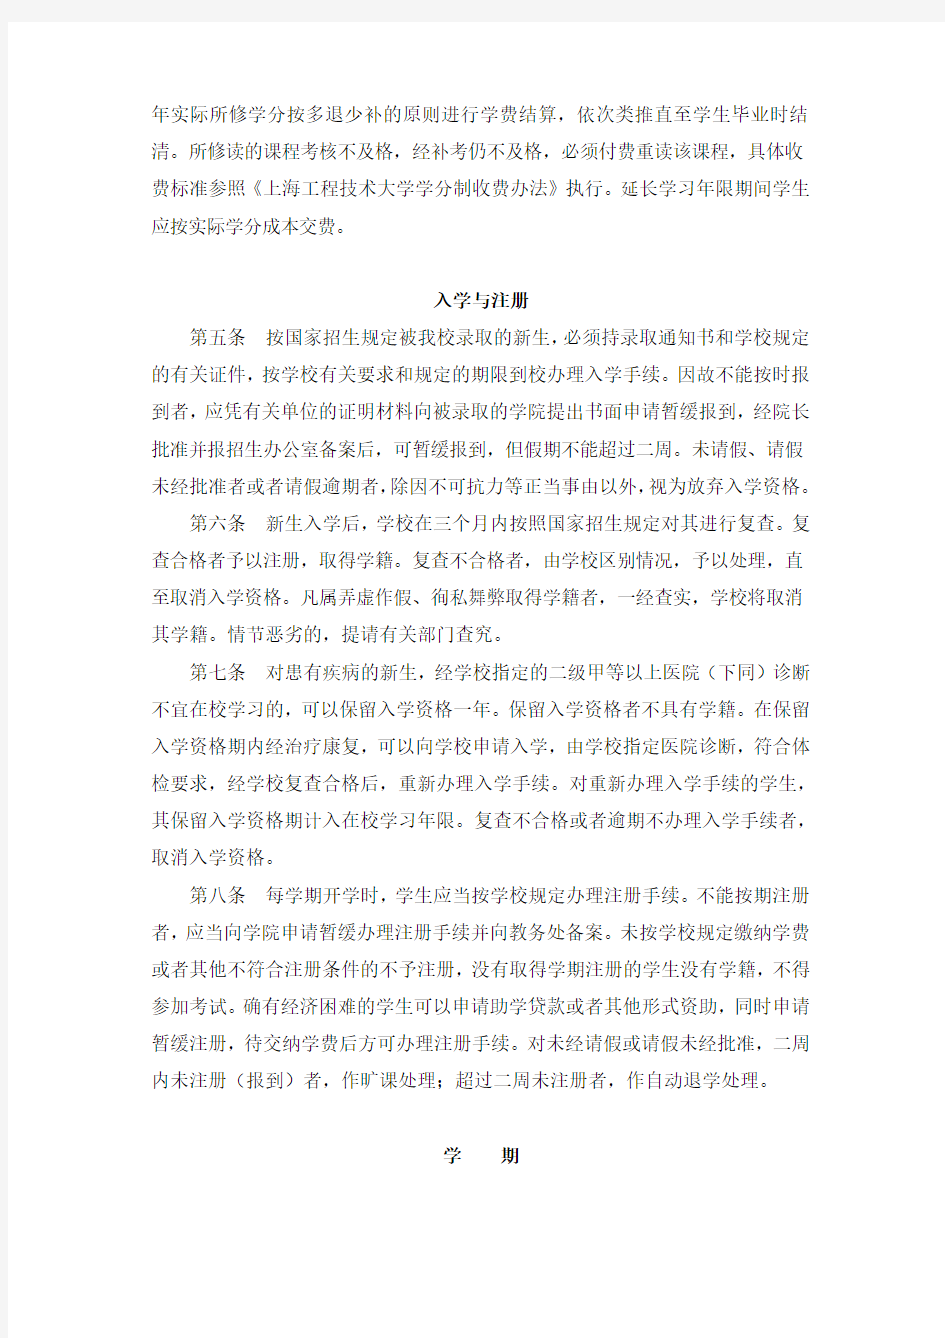 上海工程技术大学学分制学籍管理条例